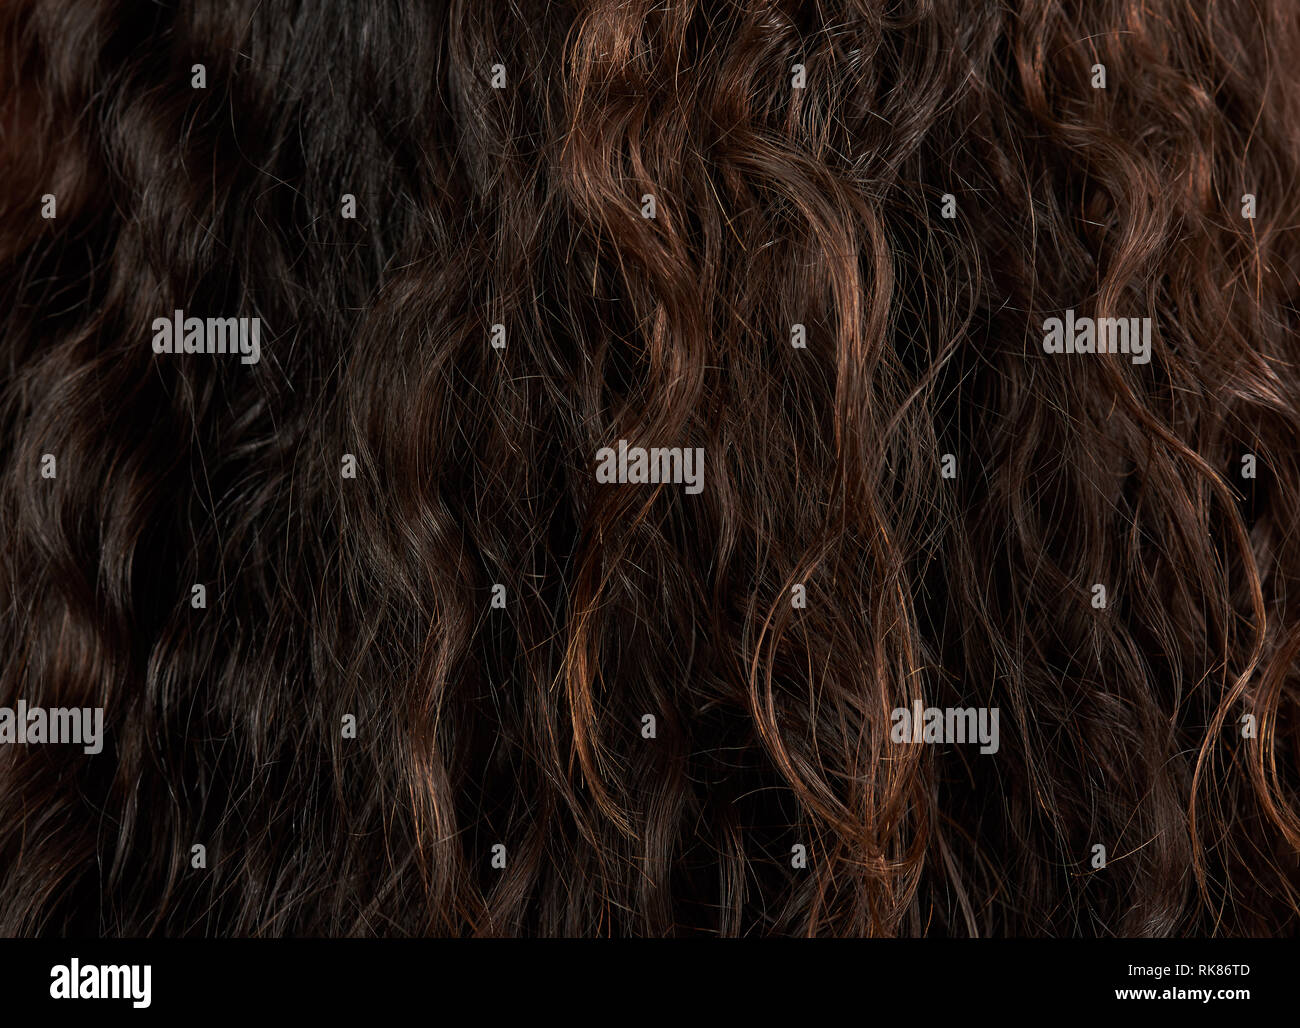 La texture des cheveux brun foncé femme close-up view Banque D'Images